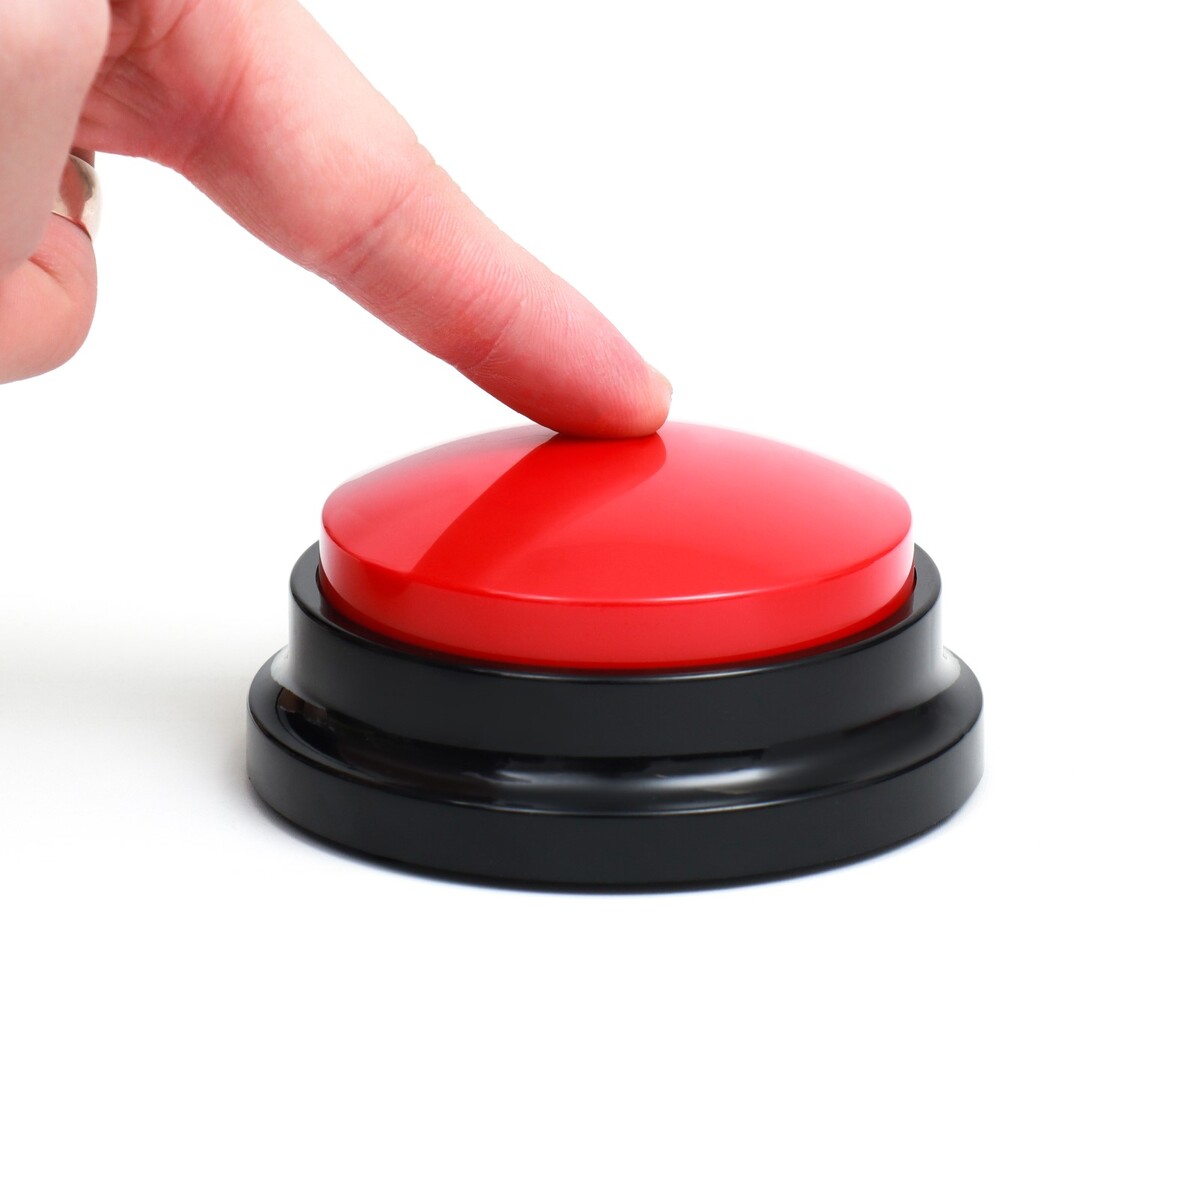 Звуковая кнопка - кликер для дрессировки животных, 9 х 9 х 5, см. красная звуковая кнопка кликер для дрессировки животных 9 х 9 х 5 см желтая